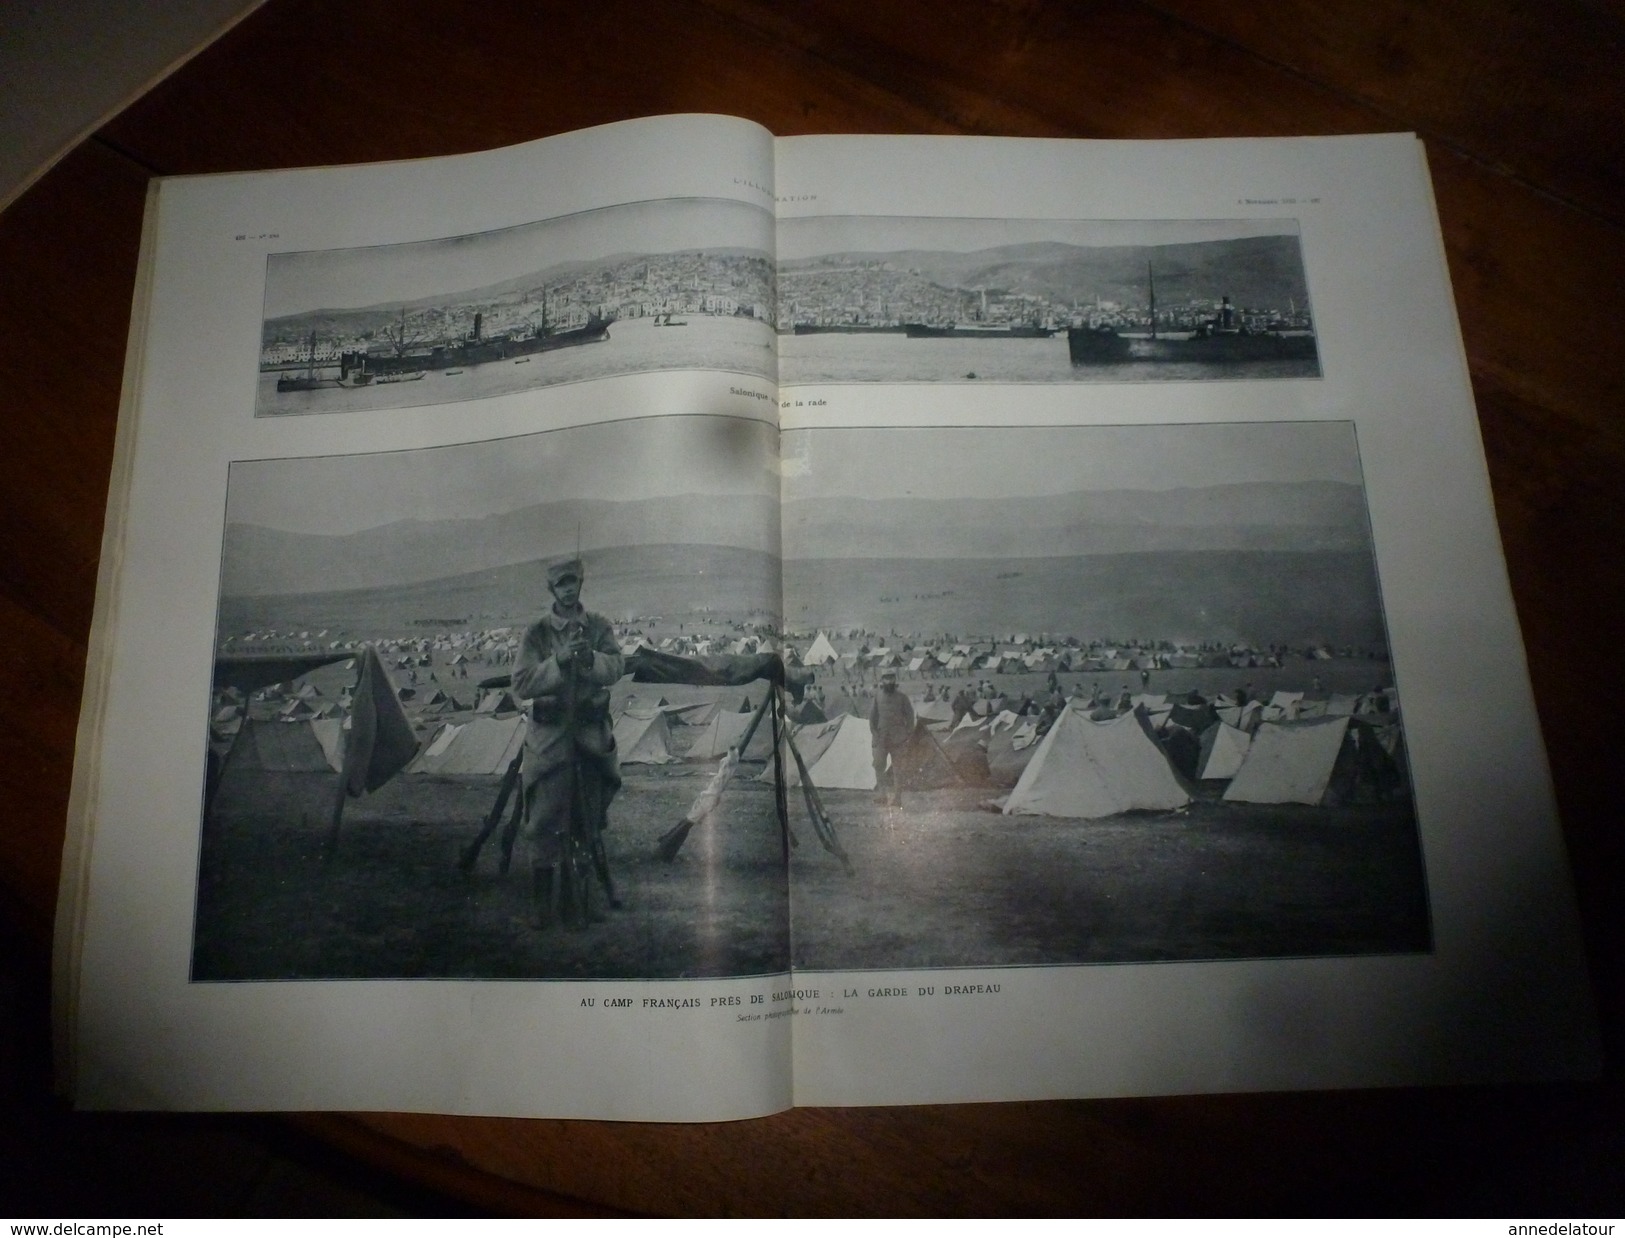 1915 L'ILLUSTRATION :Litho couleur Gl HUMBERT; Découverte EROS à Palaïopolis ; Pubs (montre Zenith, etc);Pages d'honneur